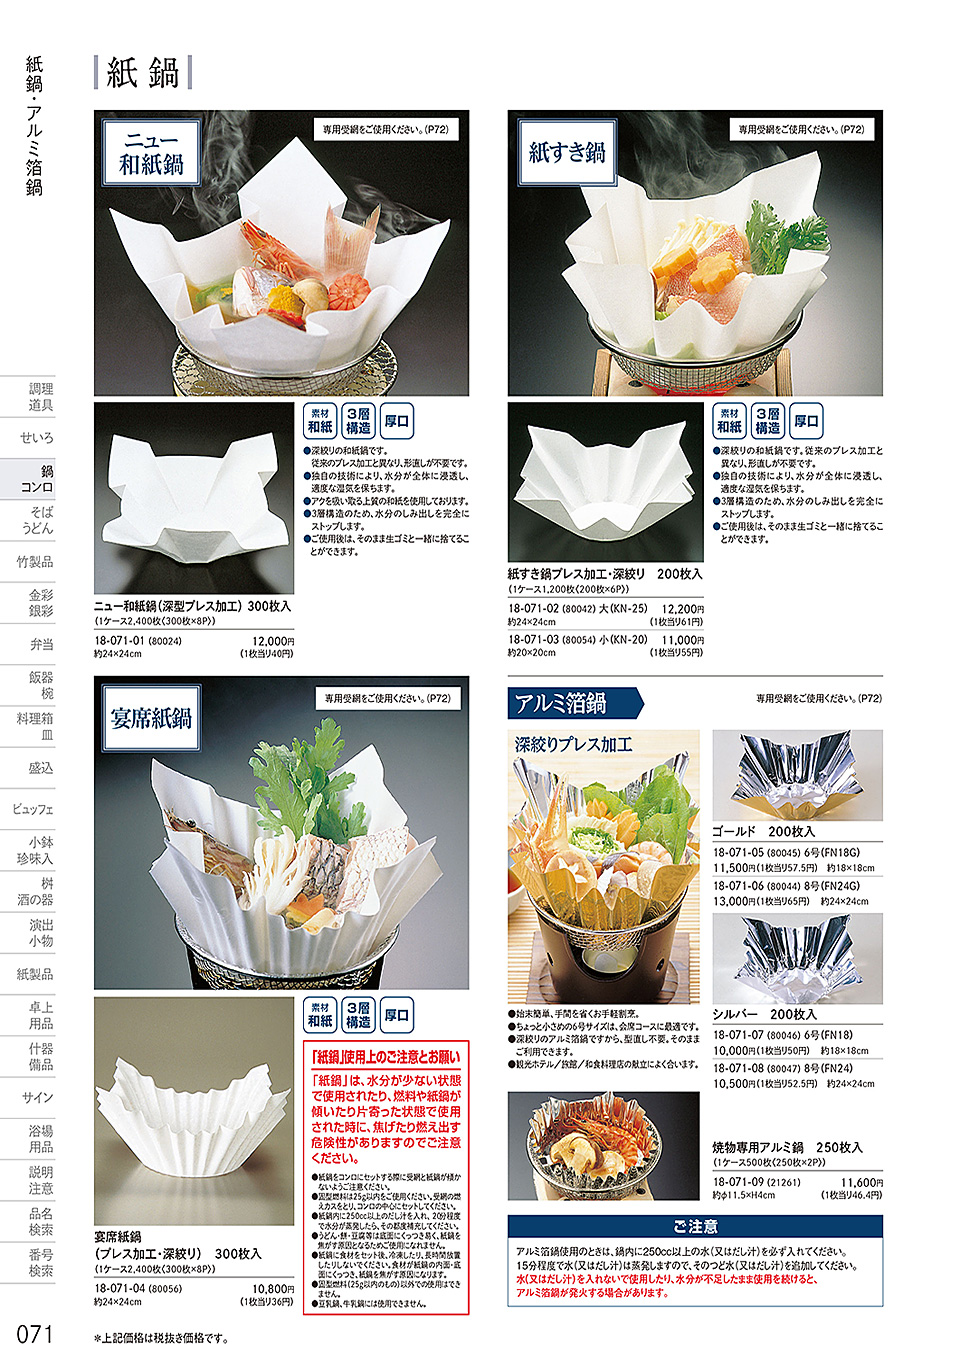 和食器の和心: 鍋・コンロ(P.71) | 紙鍋・アルミ箔鍋 - カタログからご注文